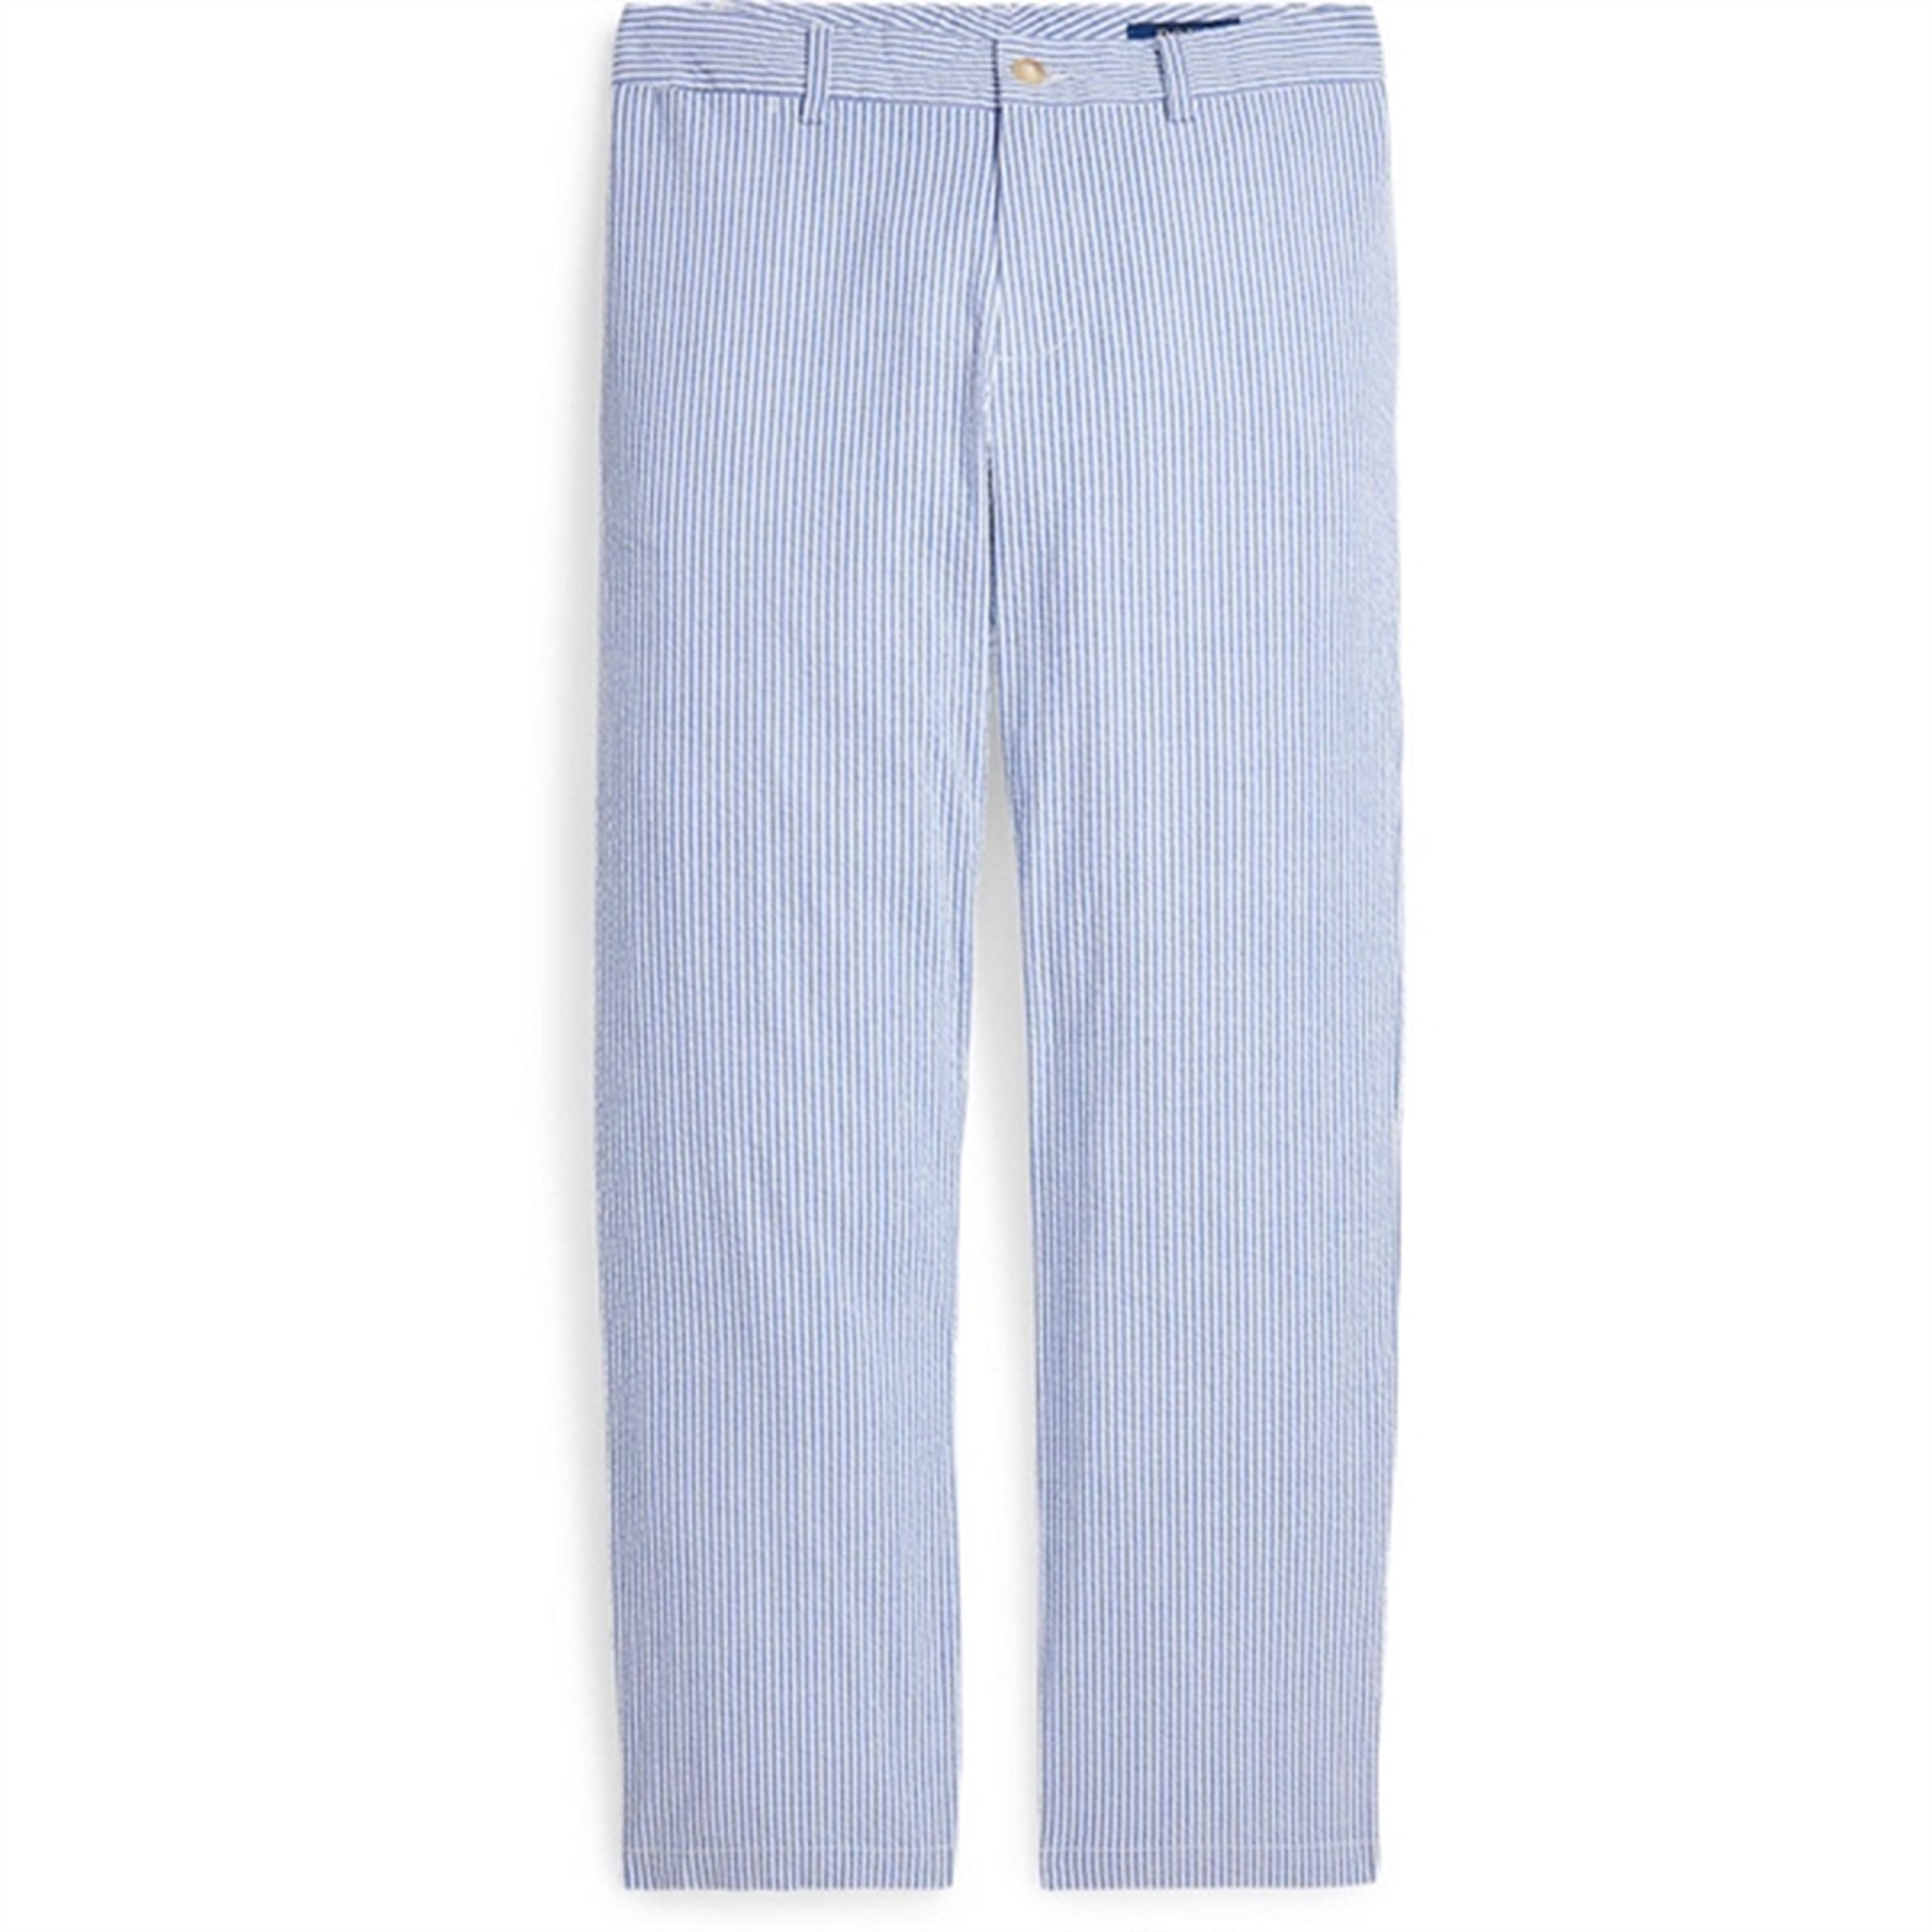 Polo Ralph Lauren Boy Pants Blue/White Multi